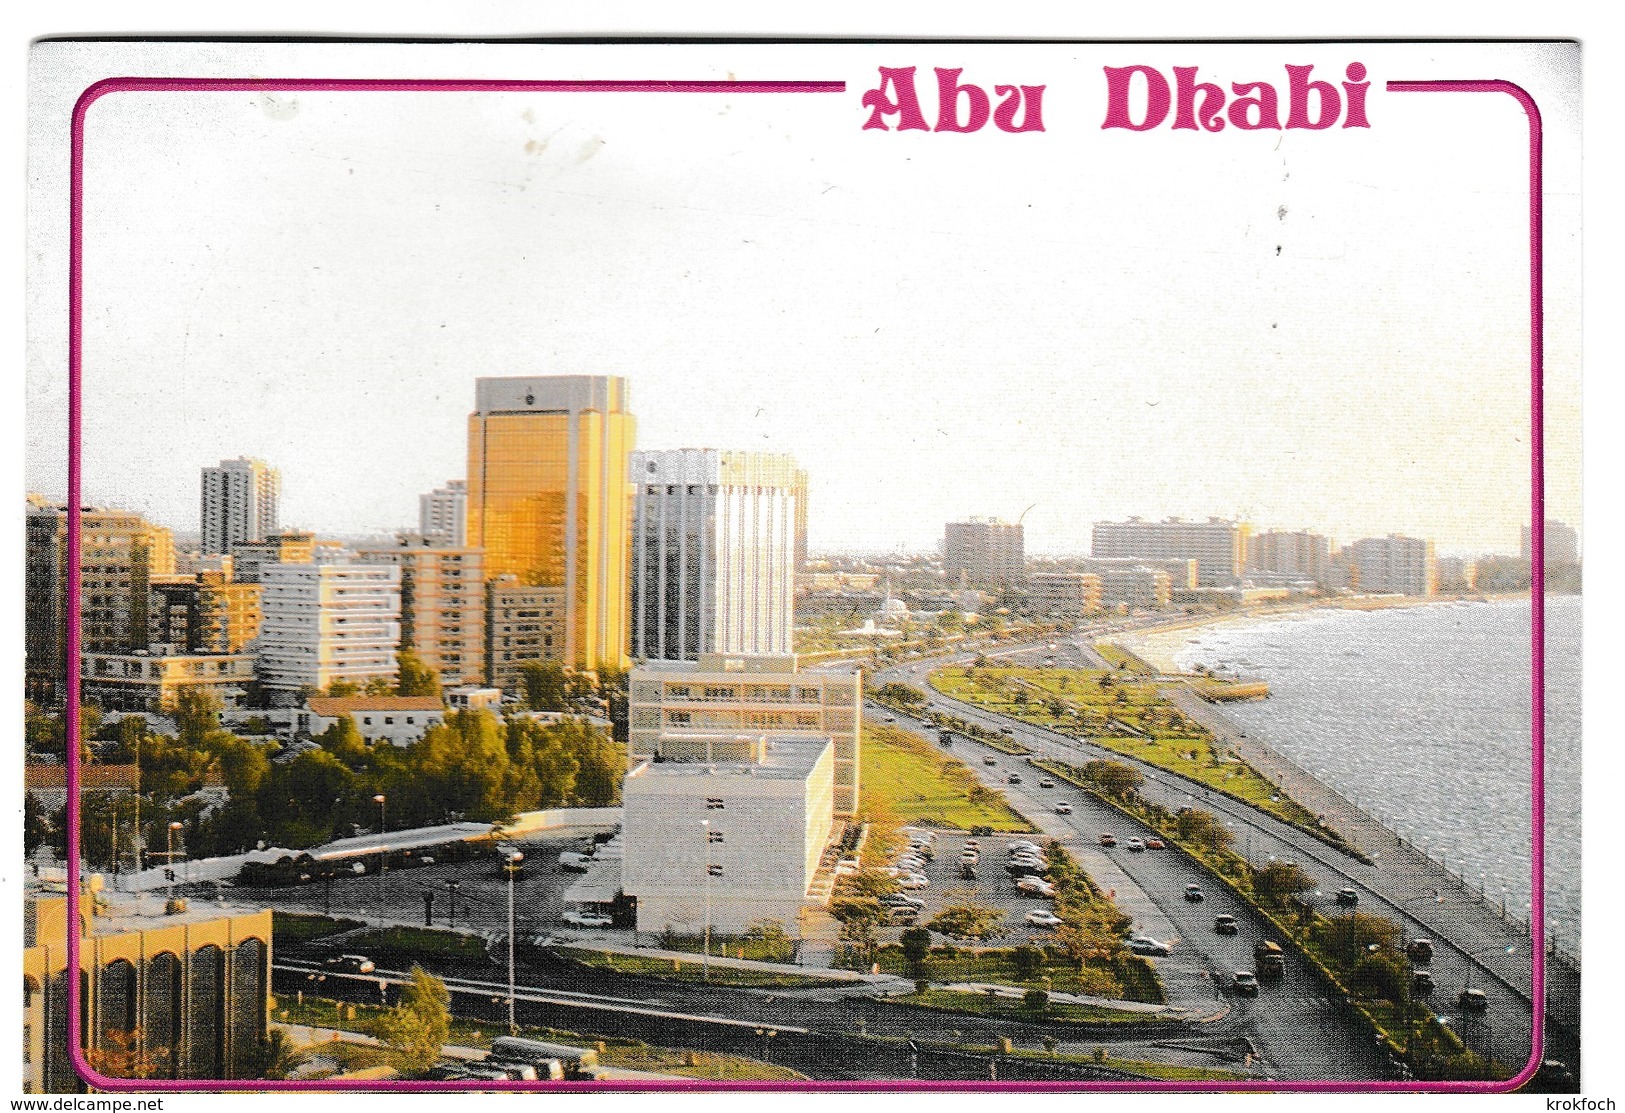 Abu Dhabi 1994 - UAE EAU - Verenigde Arabische Emiraten